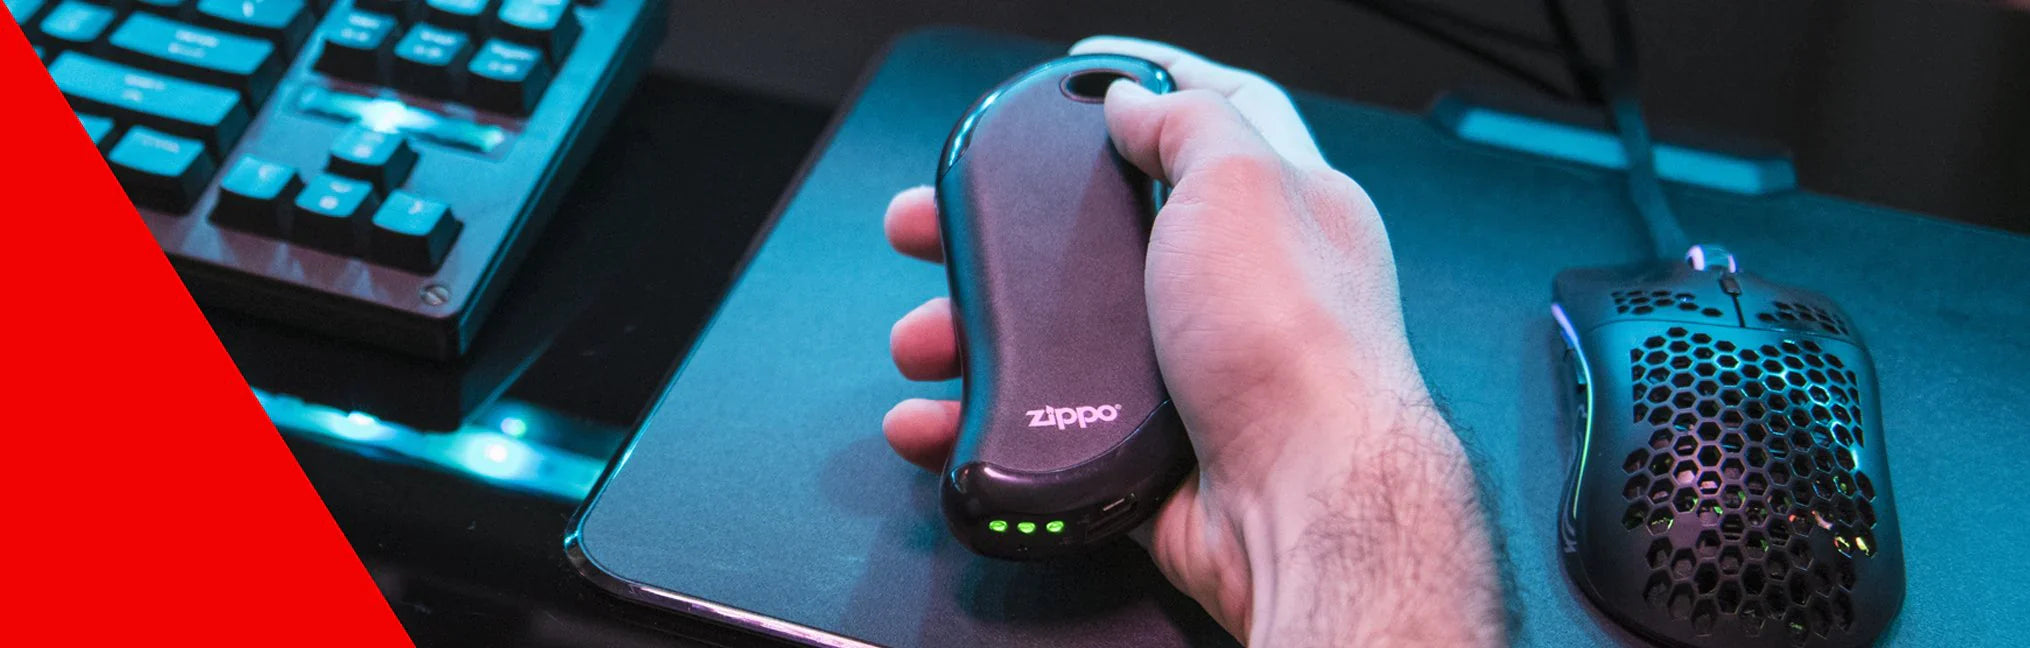 Calienta manos electrónicos Zippo